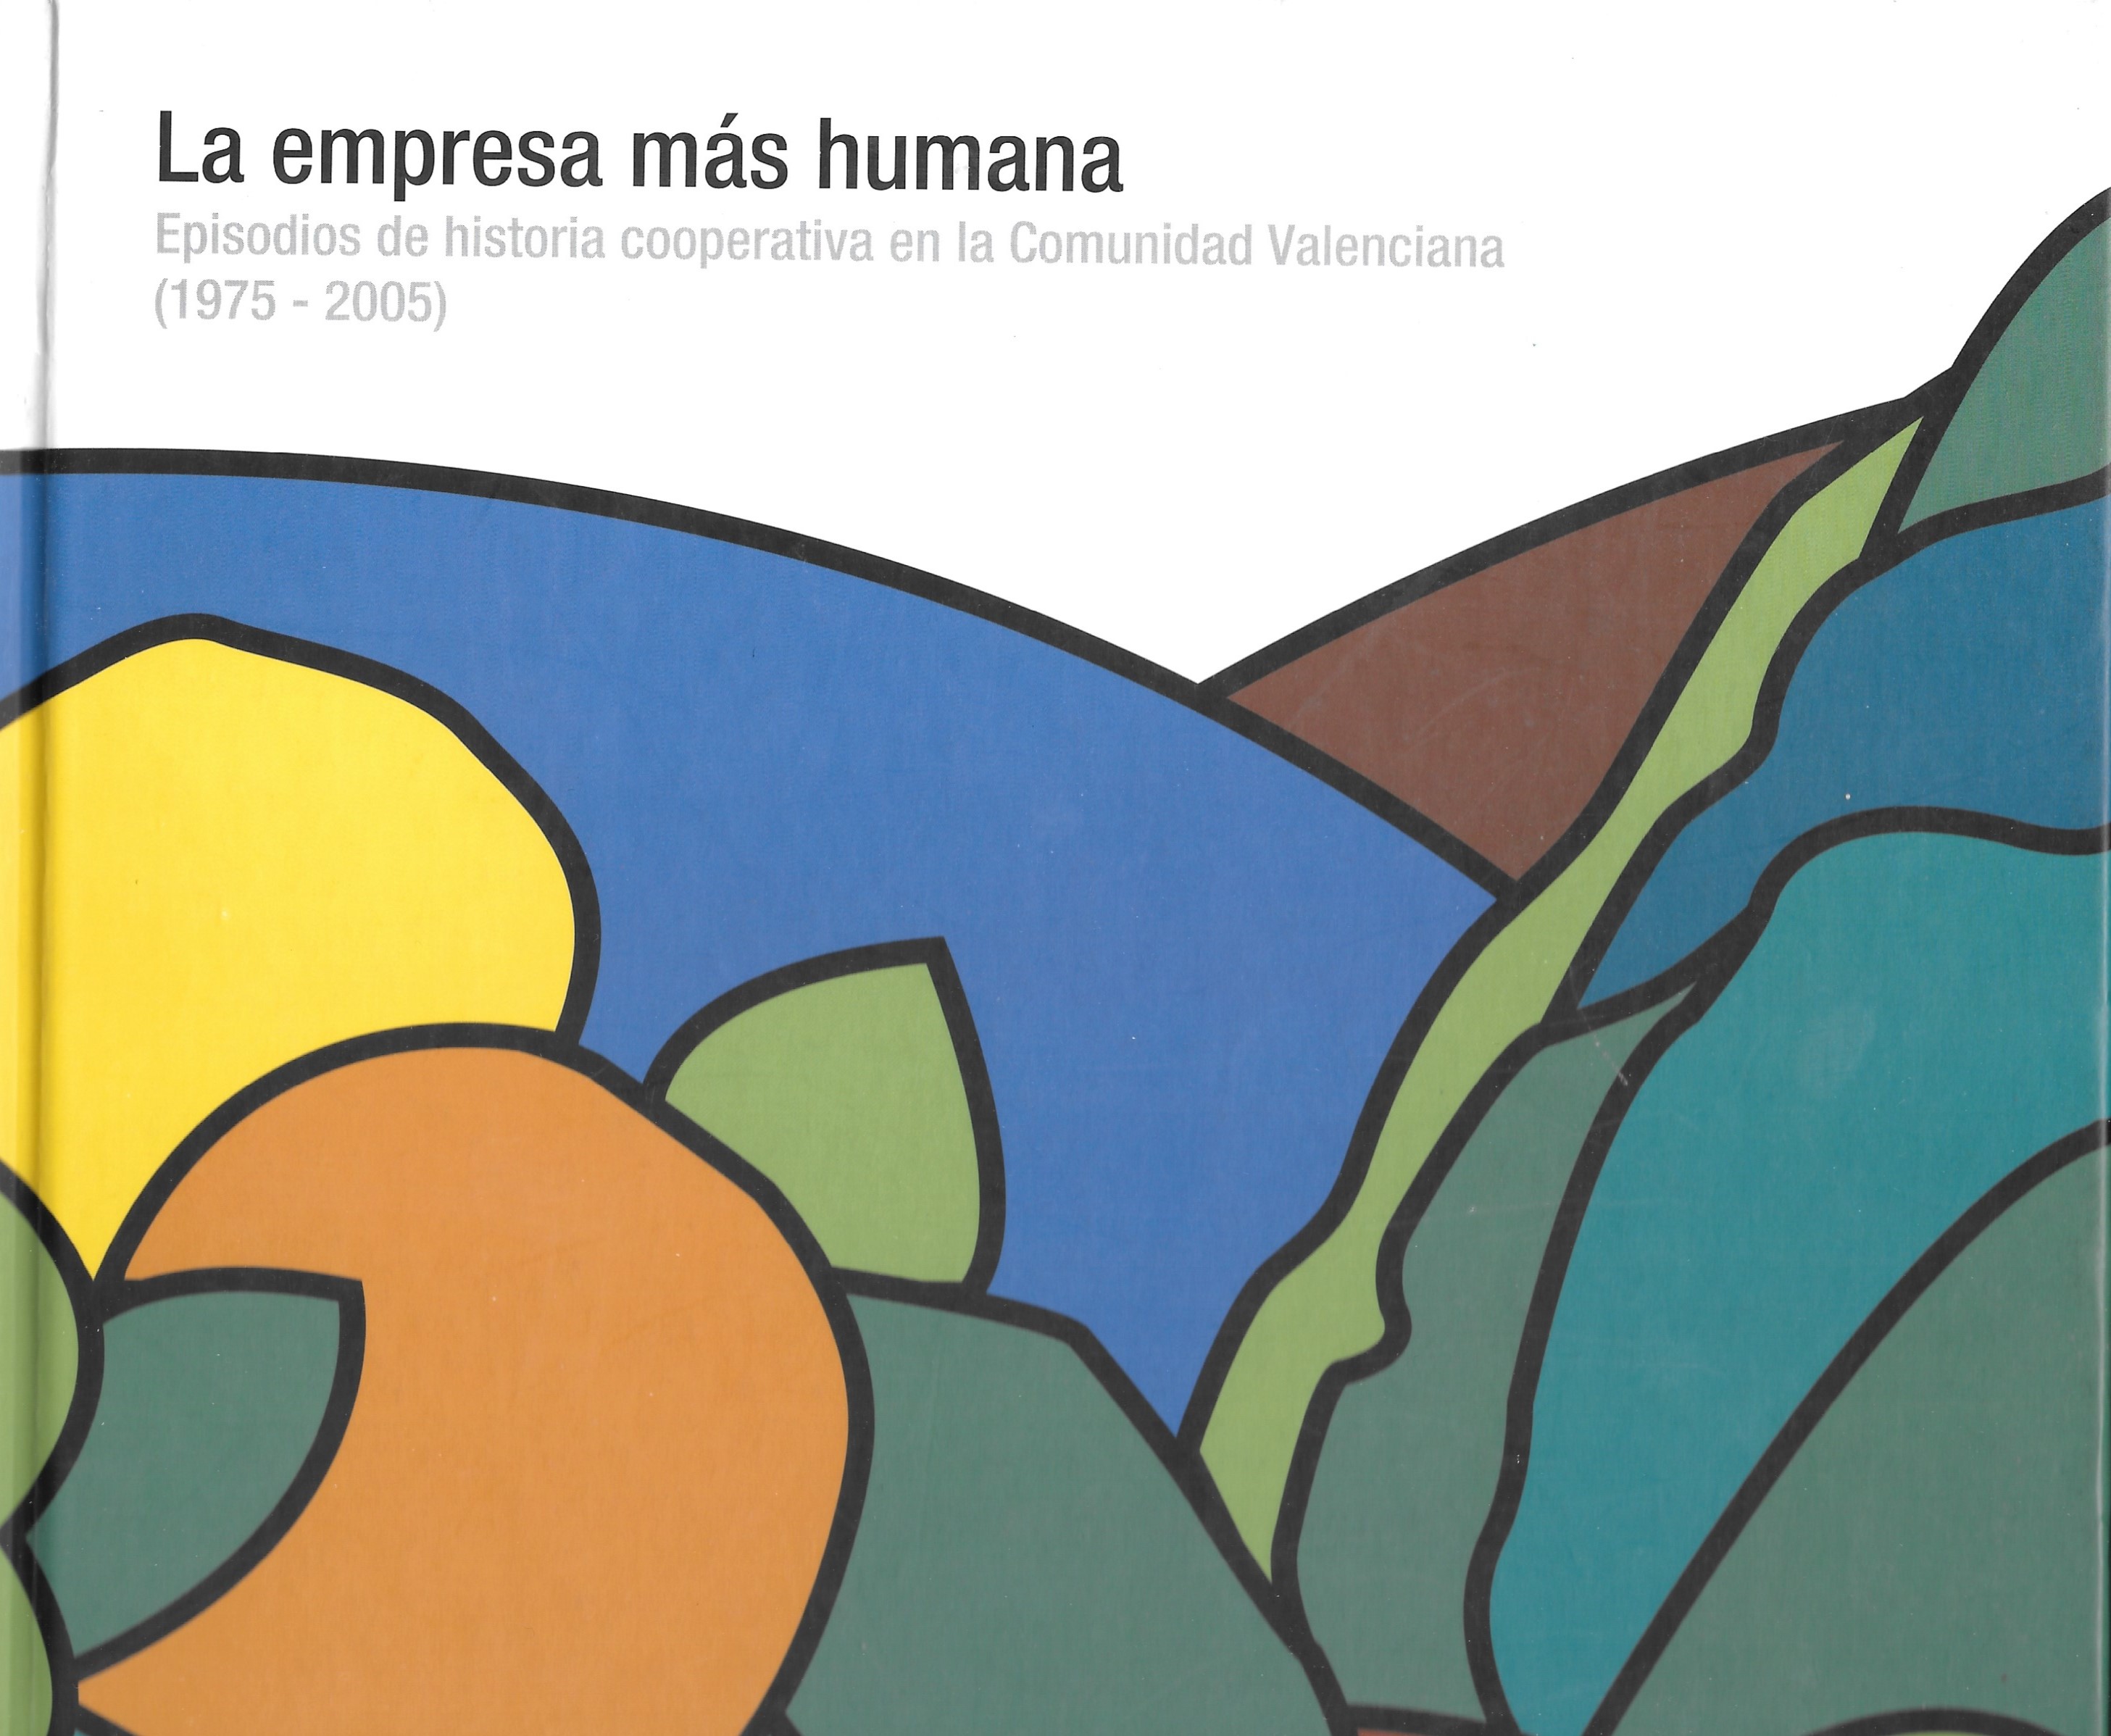 La empresa más humana. Episodios de historia cooperativa en la Comunidad Valenciana (1975-2005)